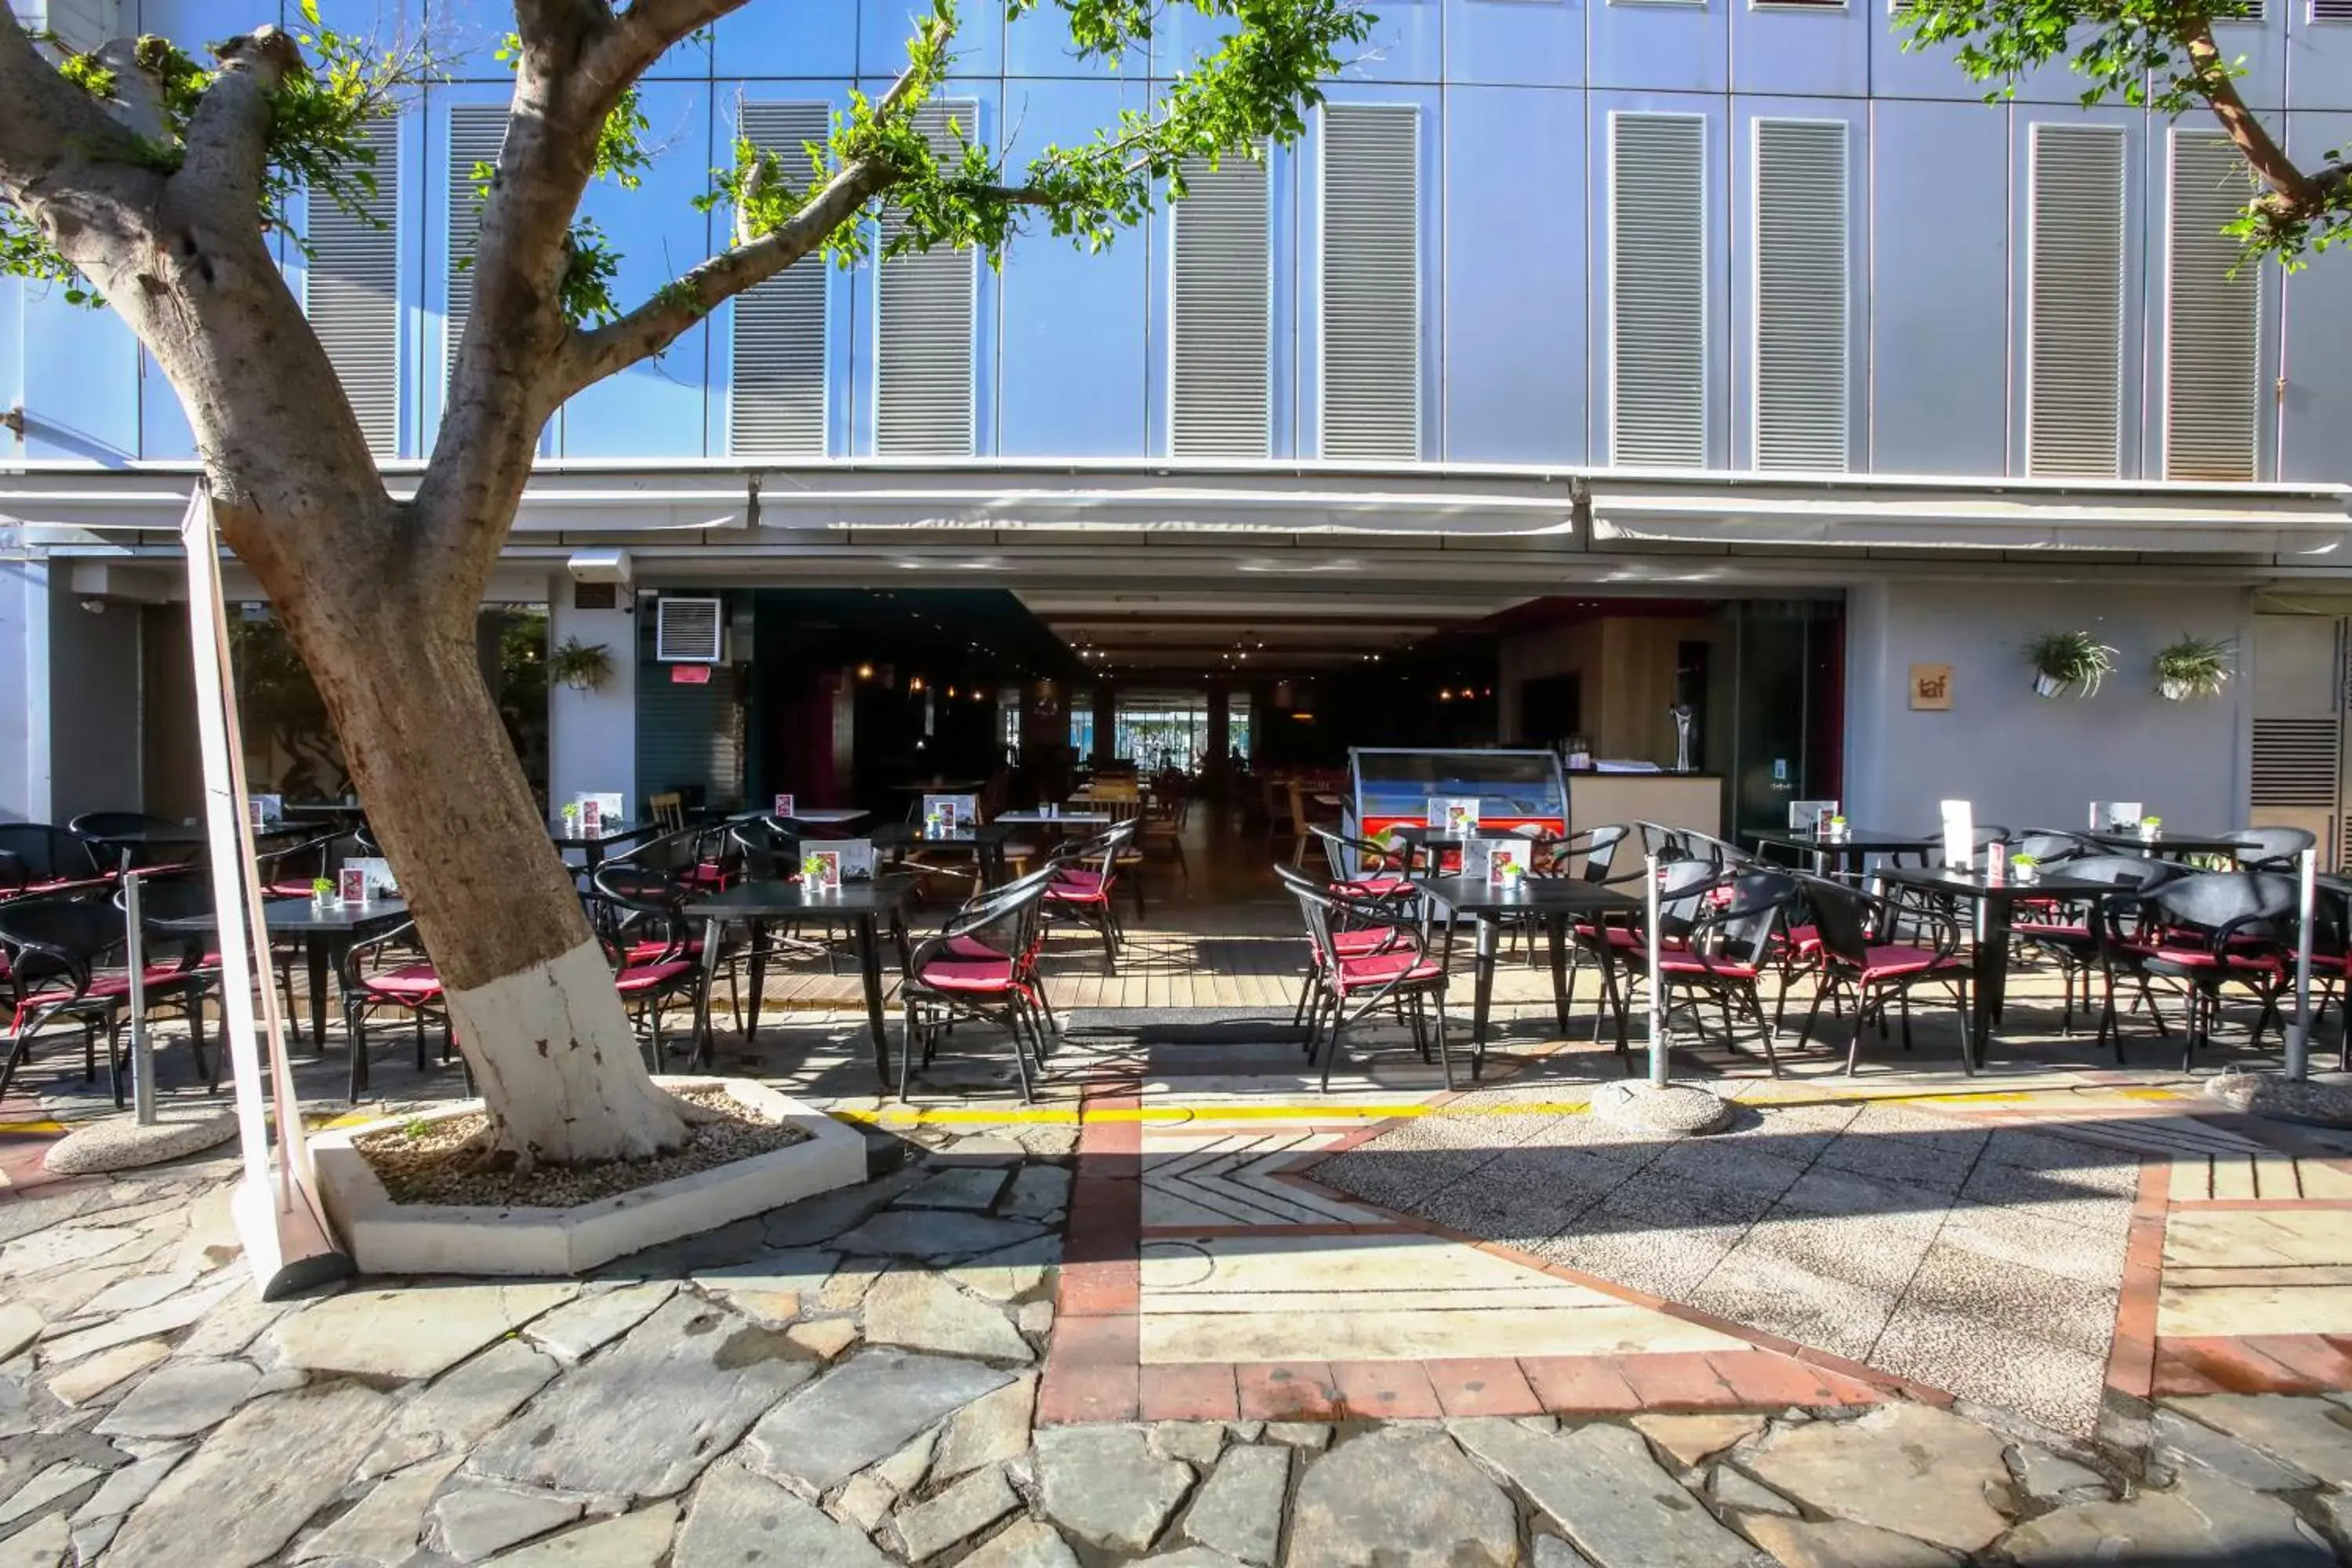 Restaurant/places to eat in Capsis Astoria Heraklion